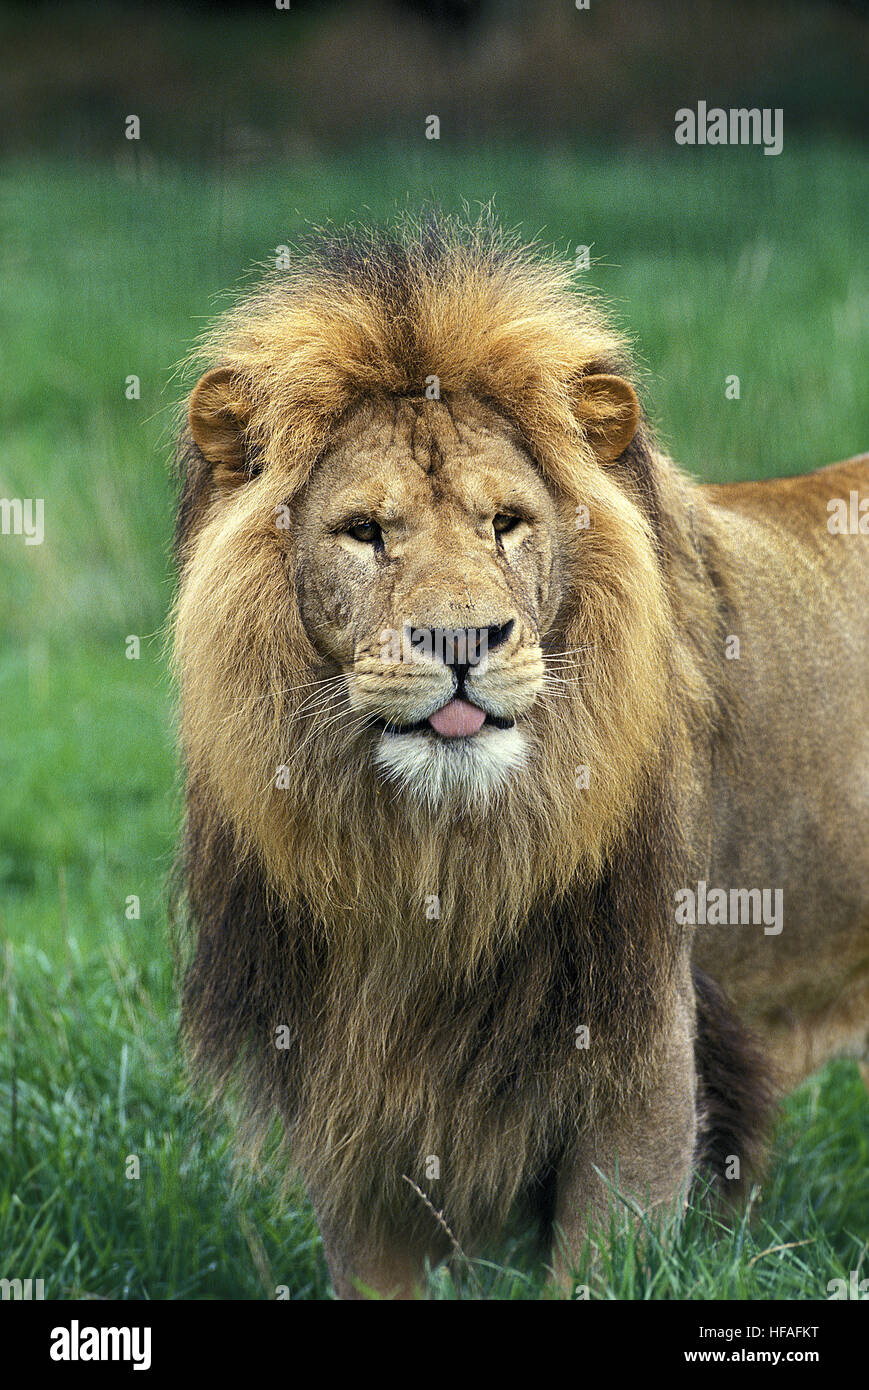 Leone africano, panthera leo, ritratto del maschio con faccia buffa Foto Stock